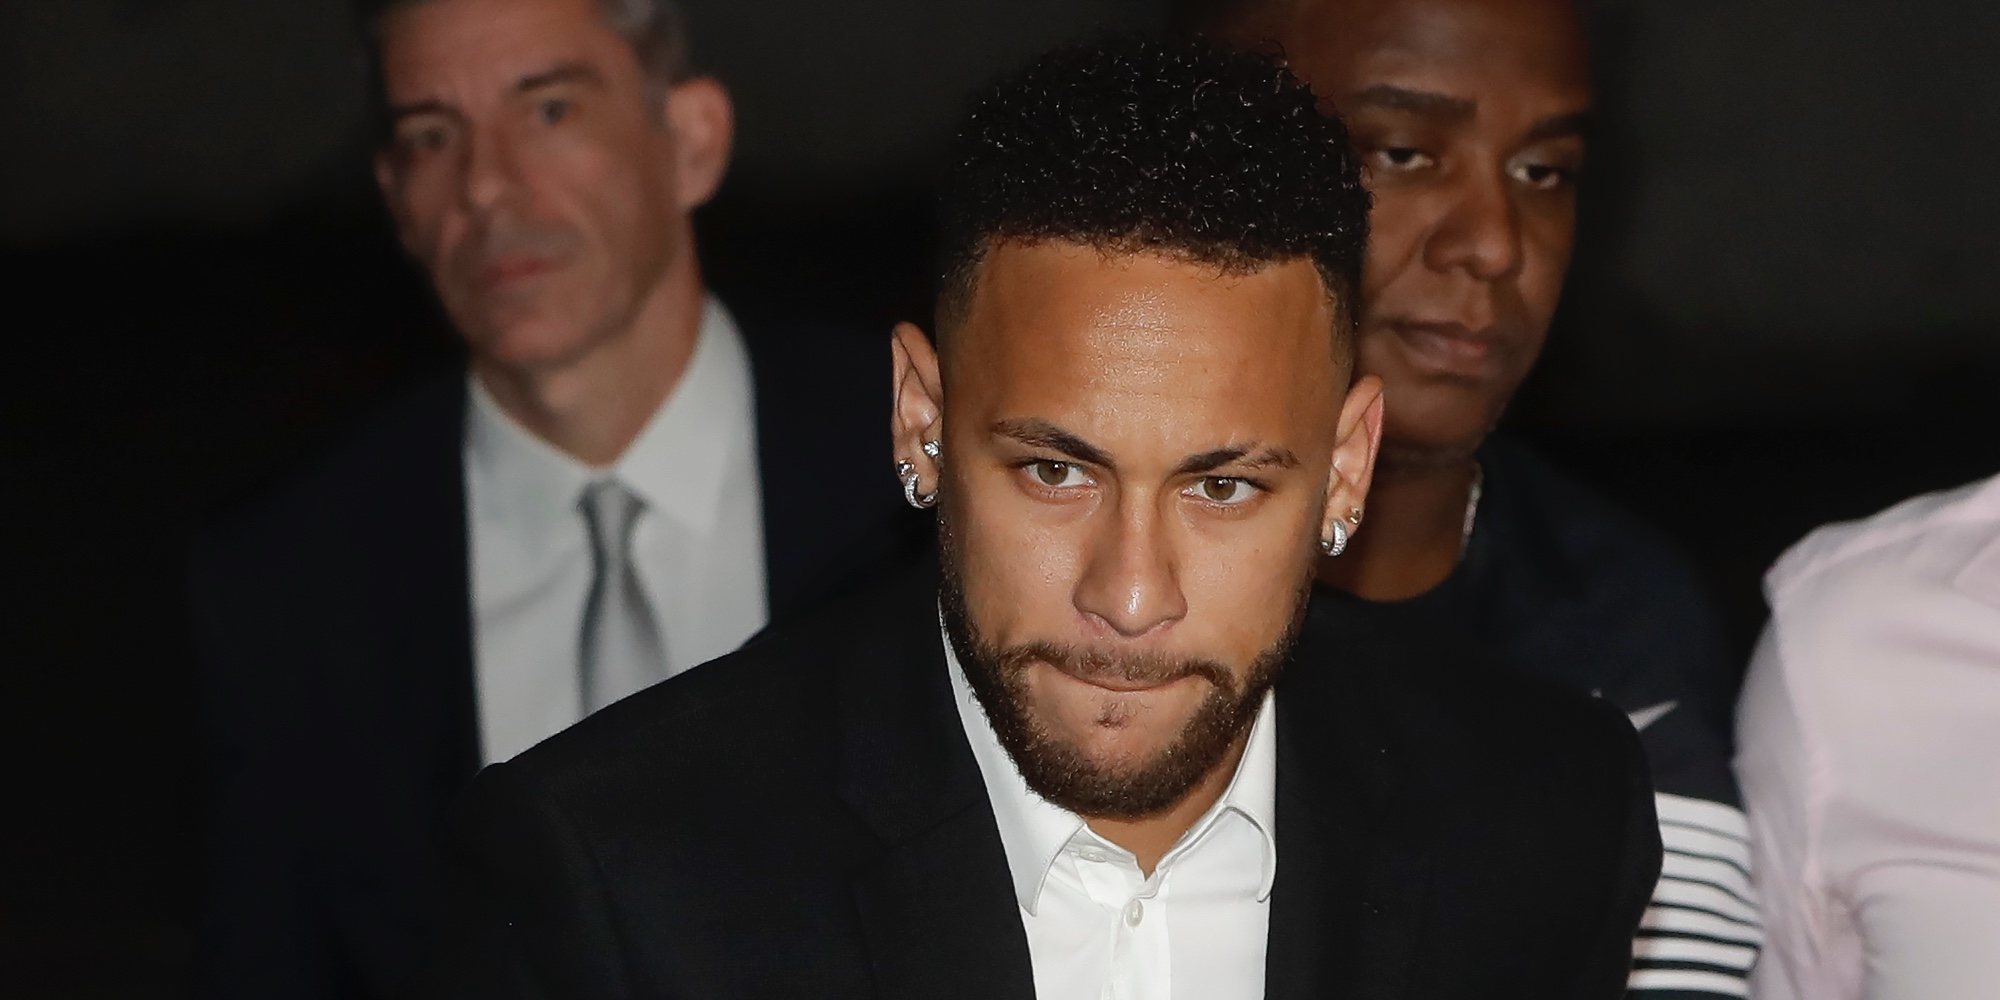 Neymar declara por una presunta violación: "La verdad saldrá tarde o temprano"